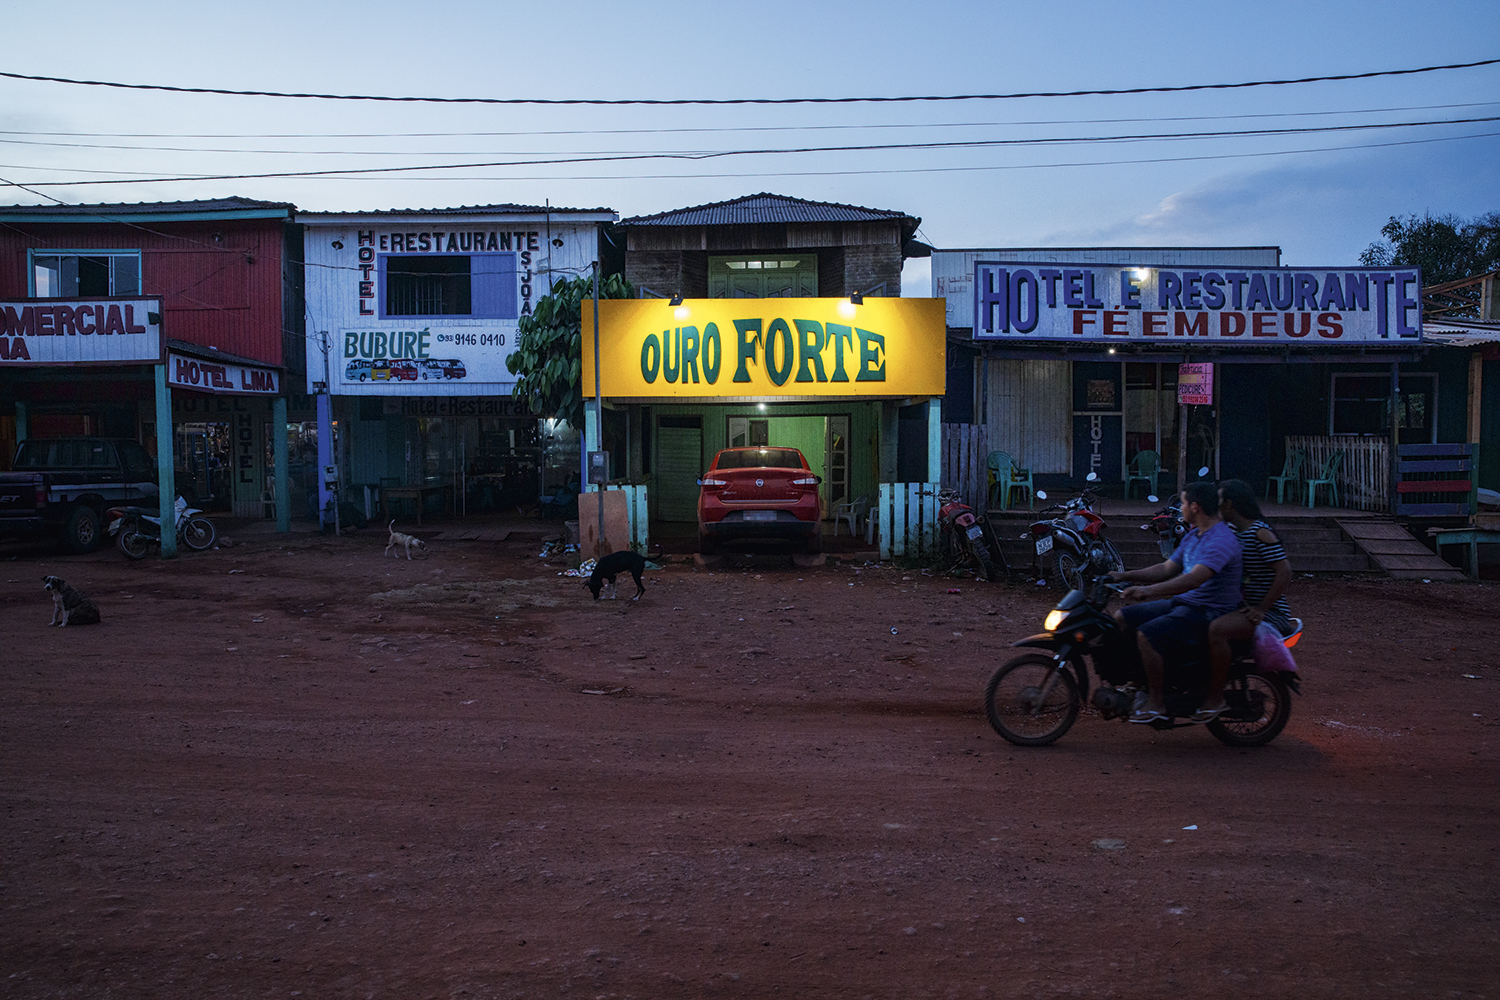 ECONOMIA - A periferia de Itaituba: muitos serviços em torno do garimpo -